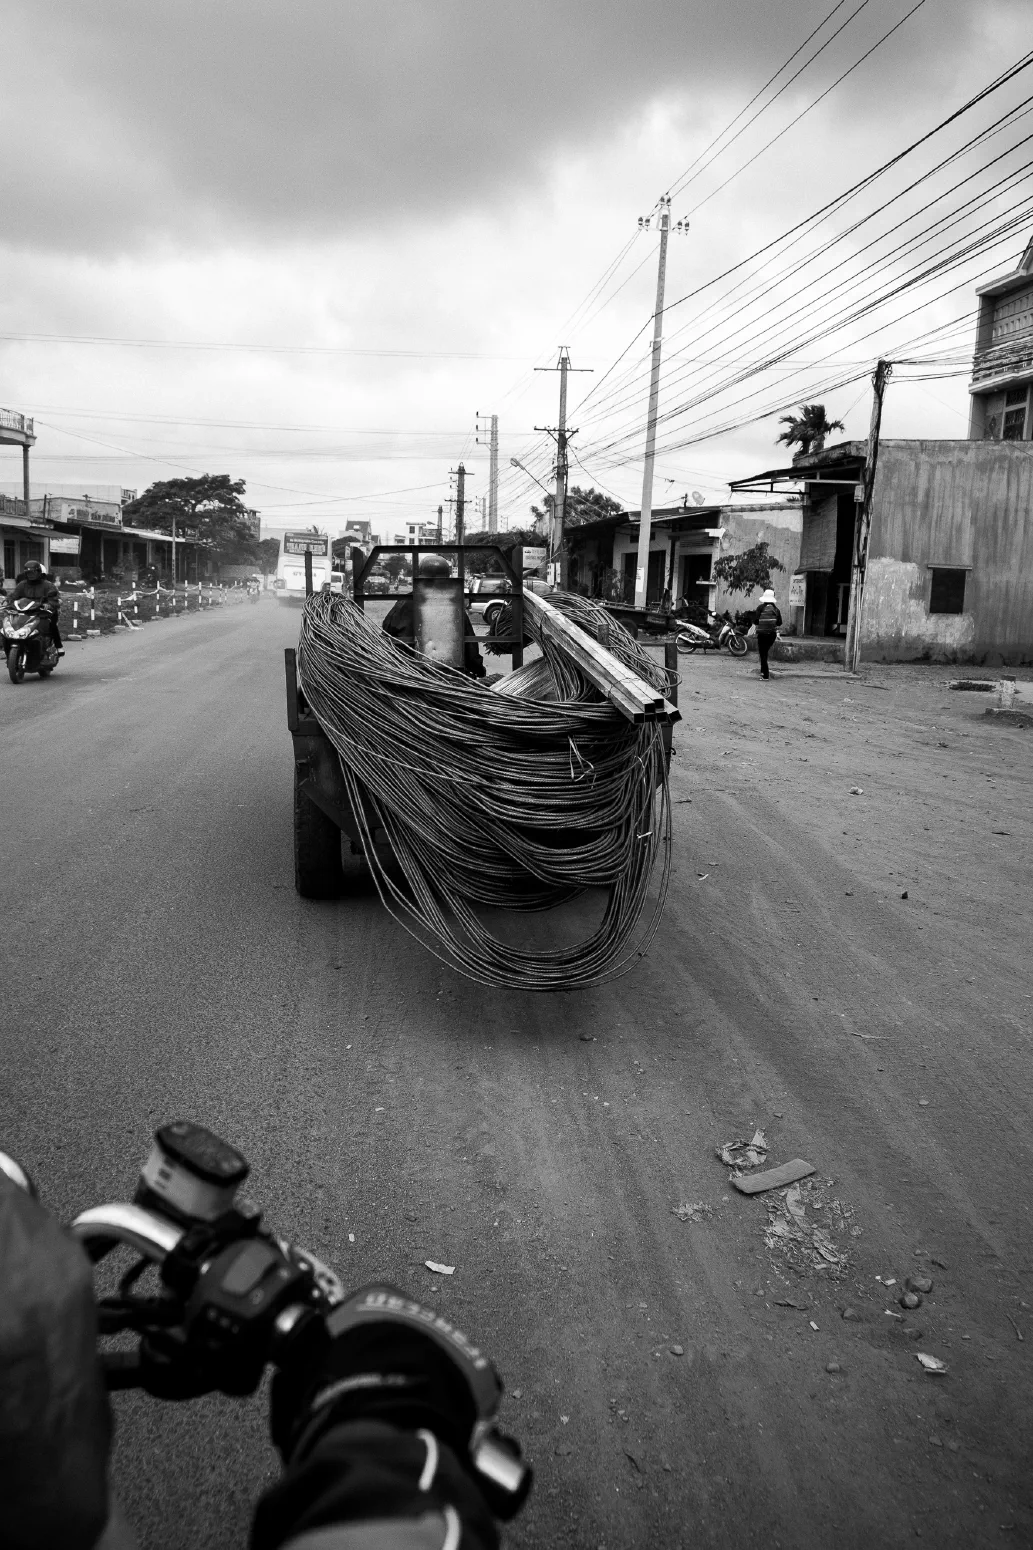 KABEL / CABLES. Dak Lak Province, Vietnam